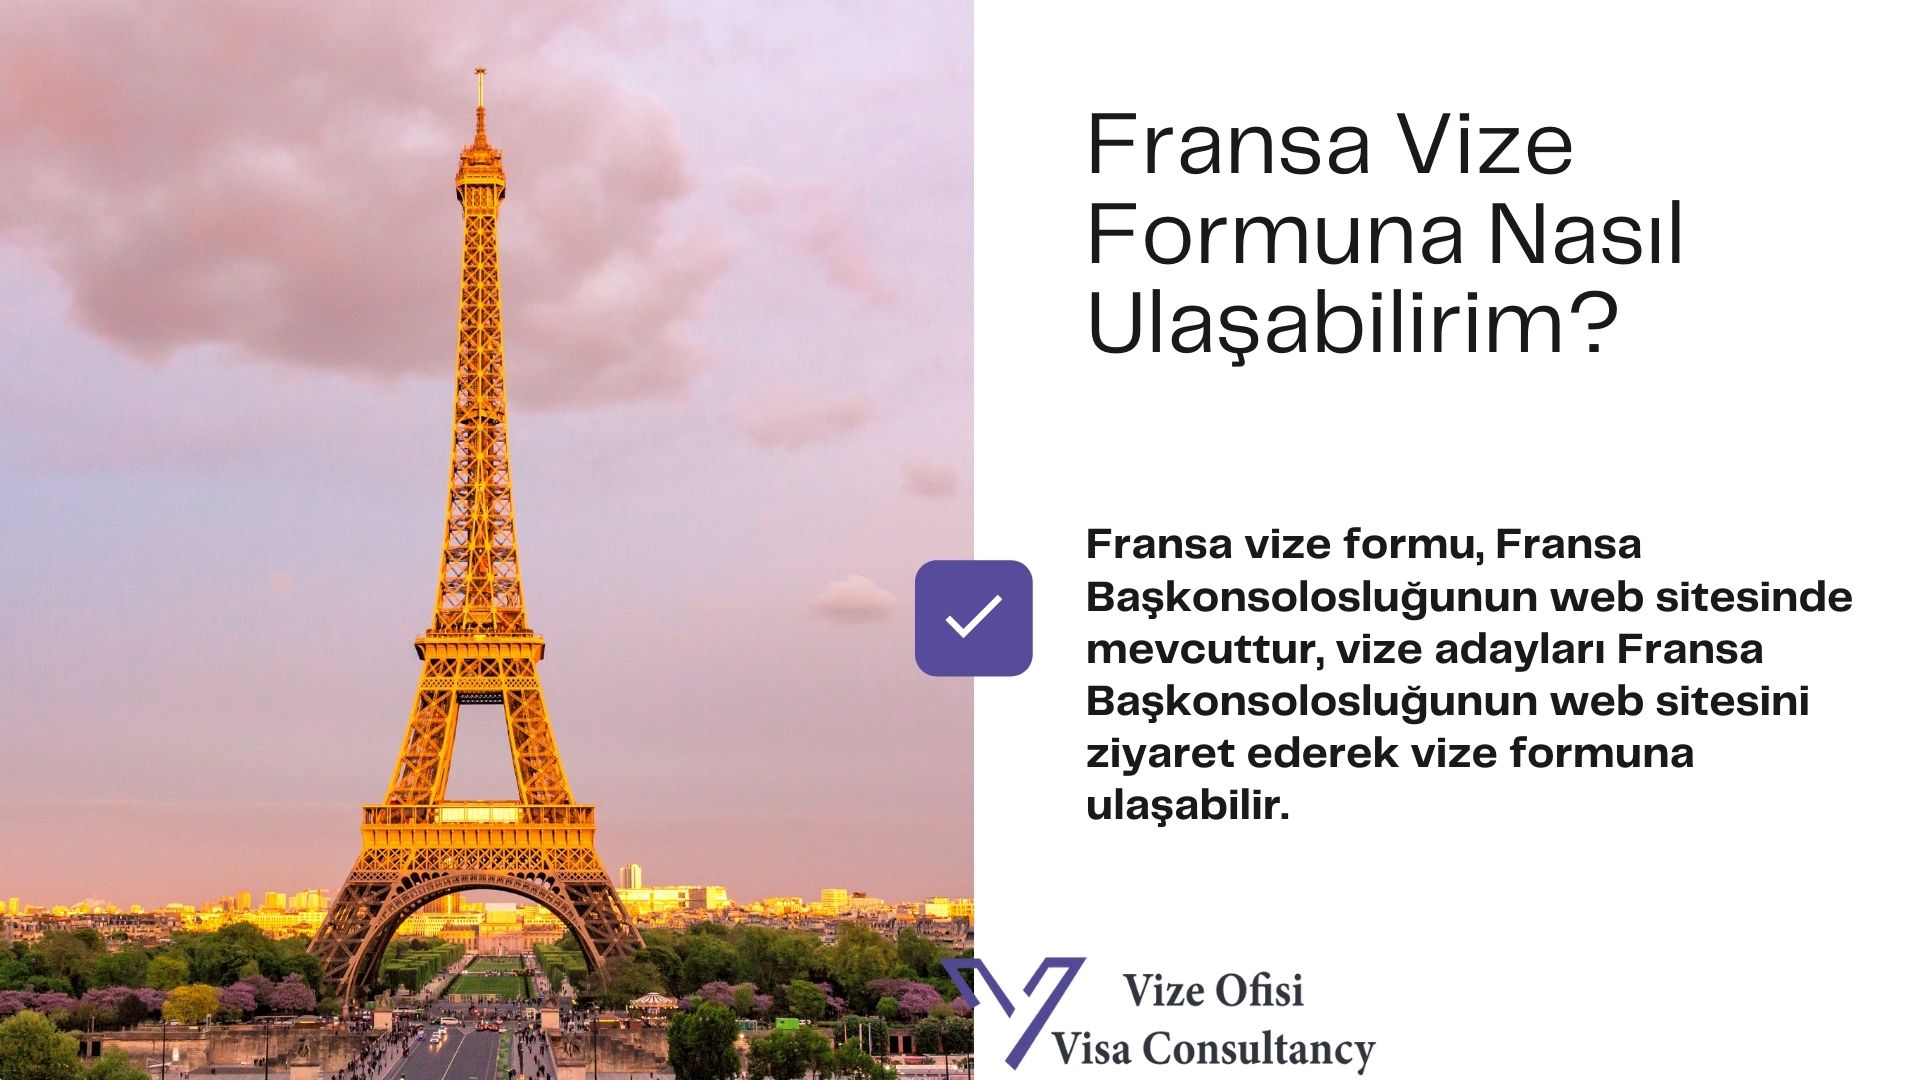 Fransa Vize Form ve Dilekçe 2021